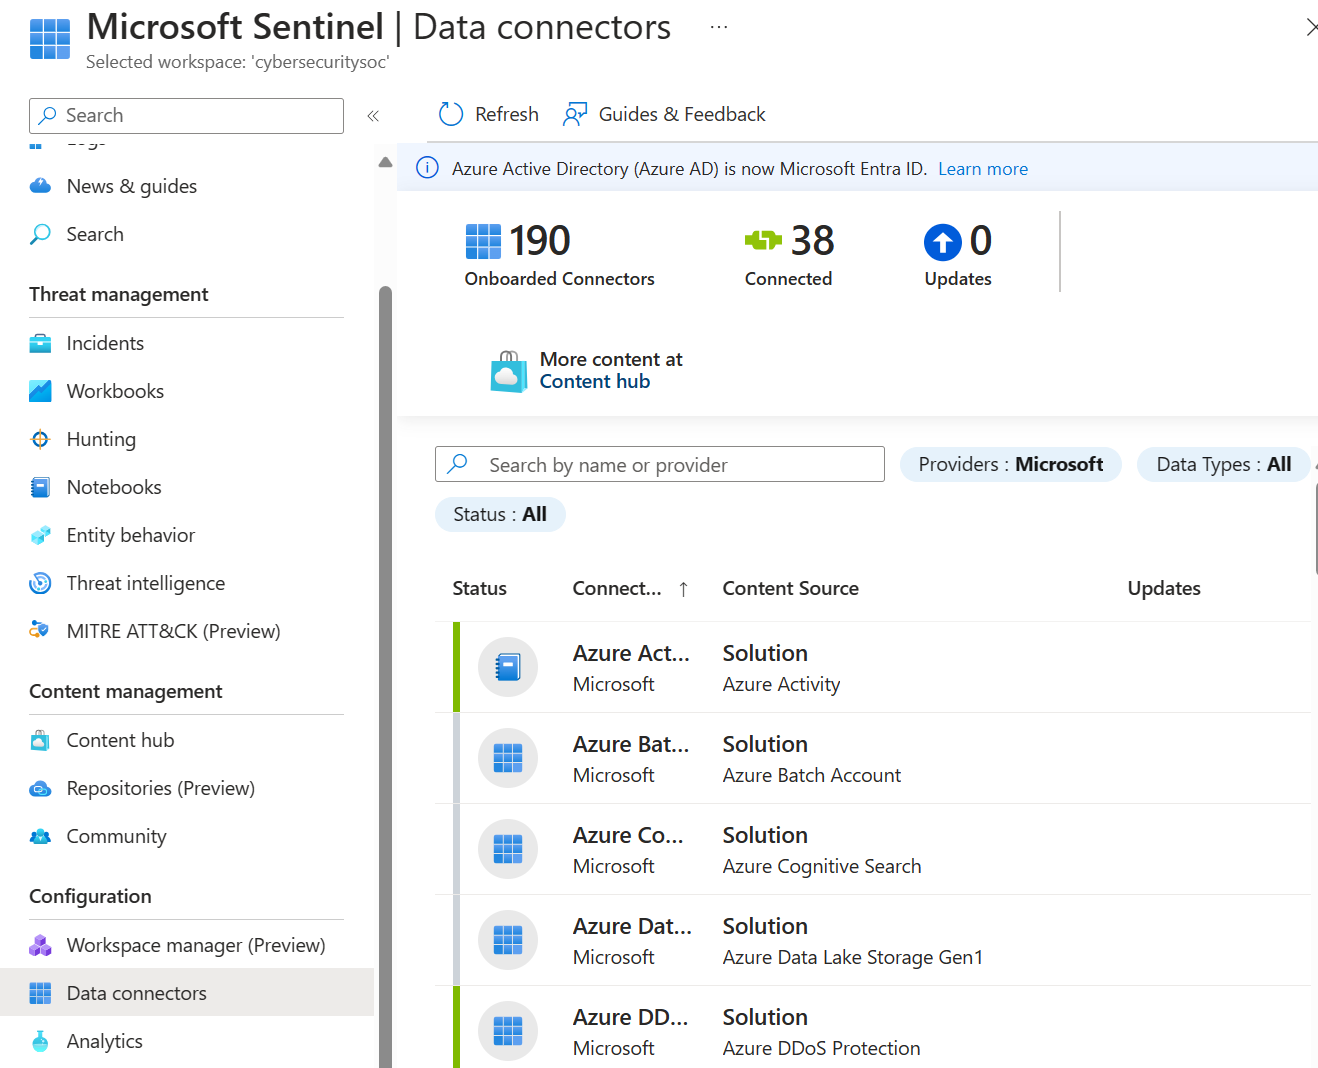 Captura de ecrã da página de conectores de dados no Microsoft Sentinel que mostra uma lista de conectores disponíveis.